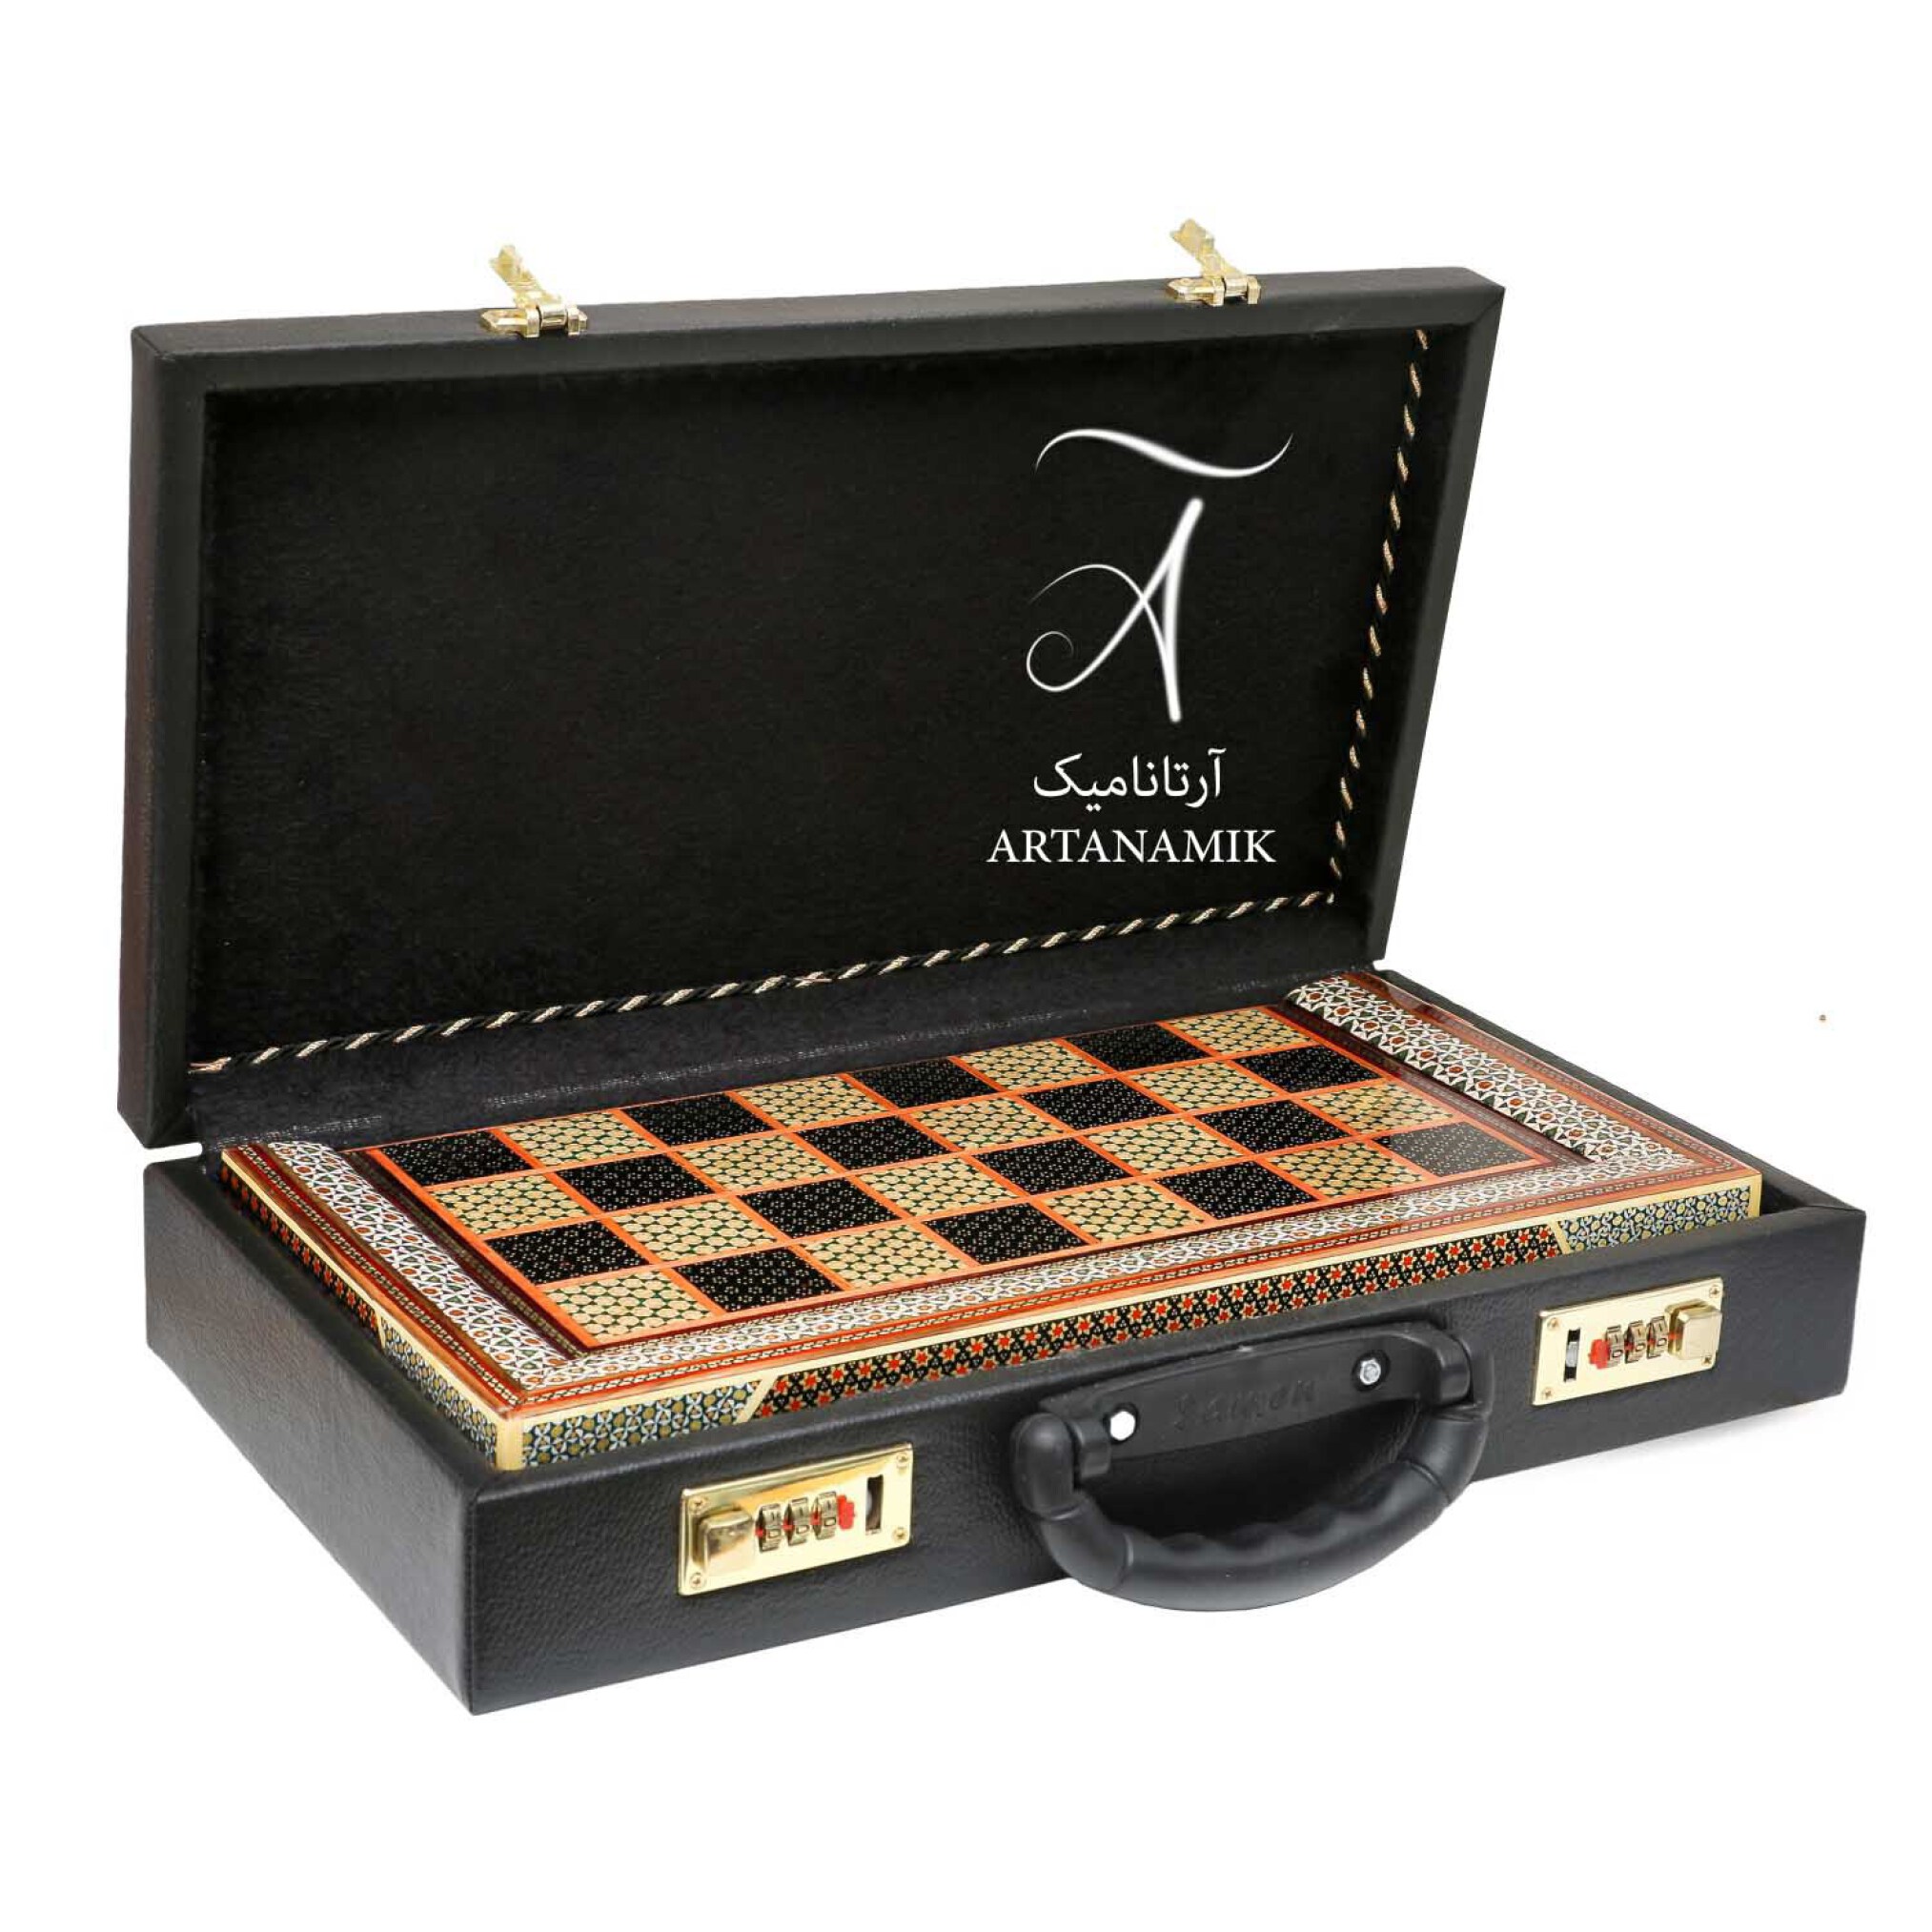  تخته نرد خاتم کاری و شطرنج شیراز طرح پرکار به همراه کیف 